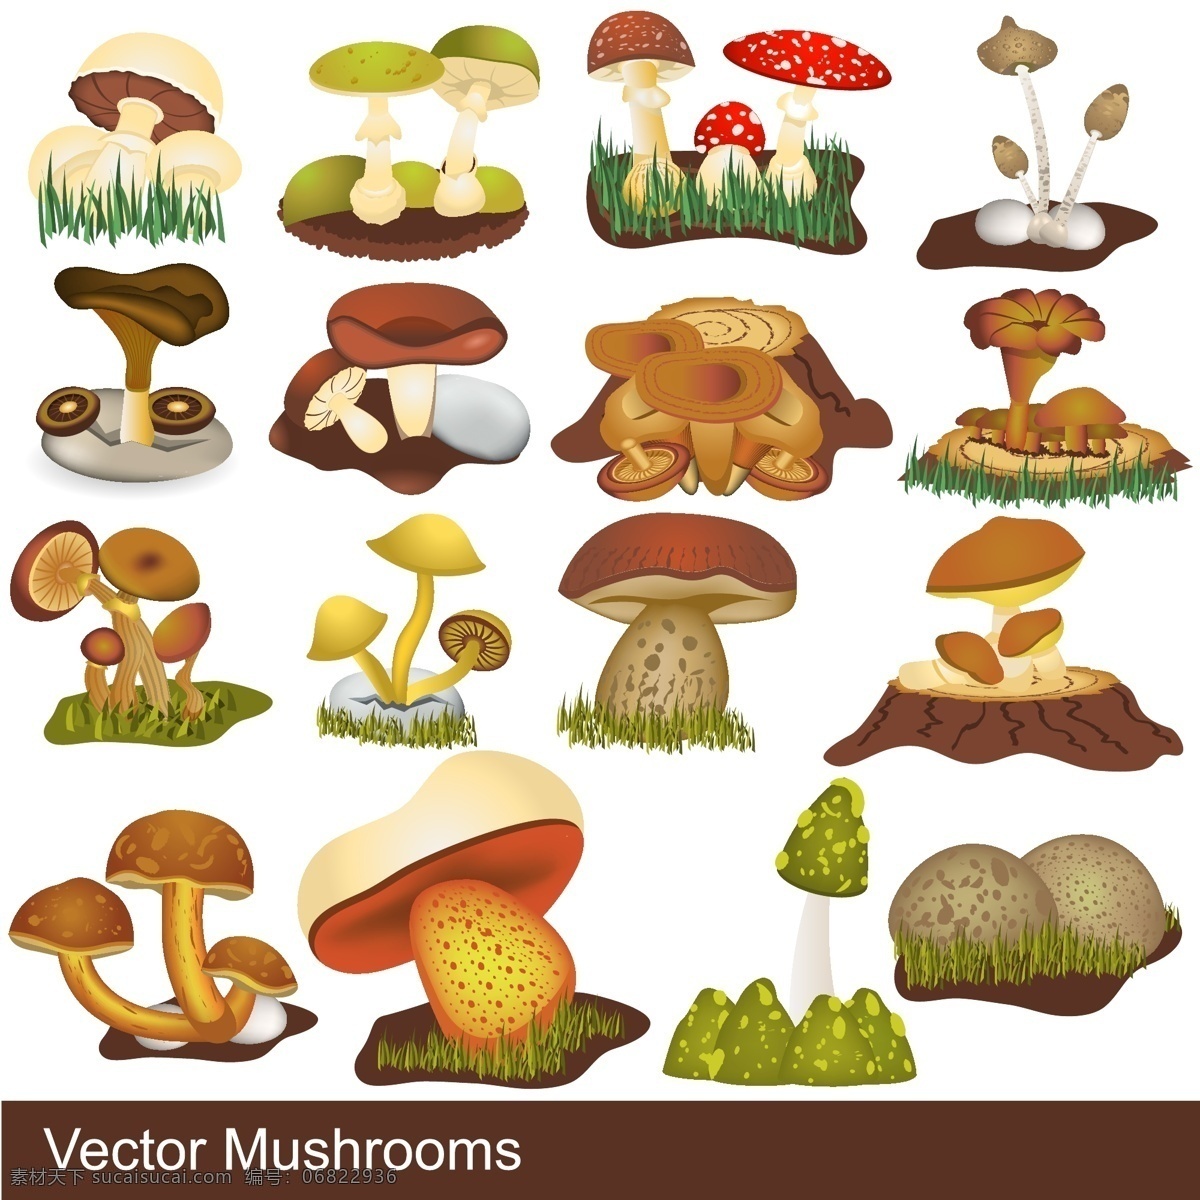 蘑菇矢量素材 蘑菇模板下载 矢量蔬菜 卡通蔬菜 新鲜蔬菜 蘑菇 菌类 餐饮美食 生活百科 矢量素材 白色